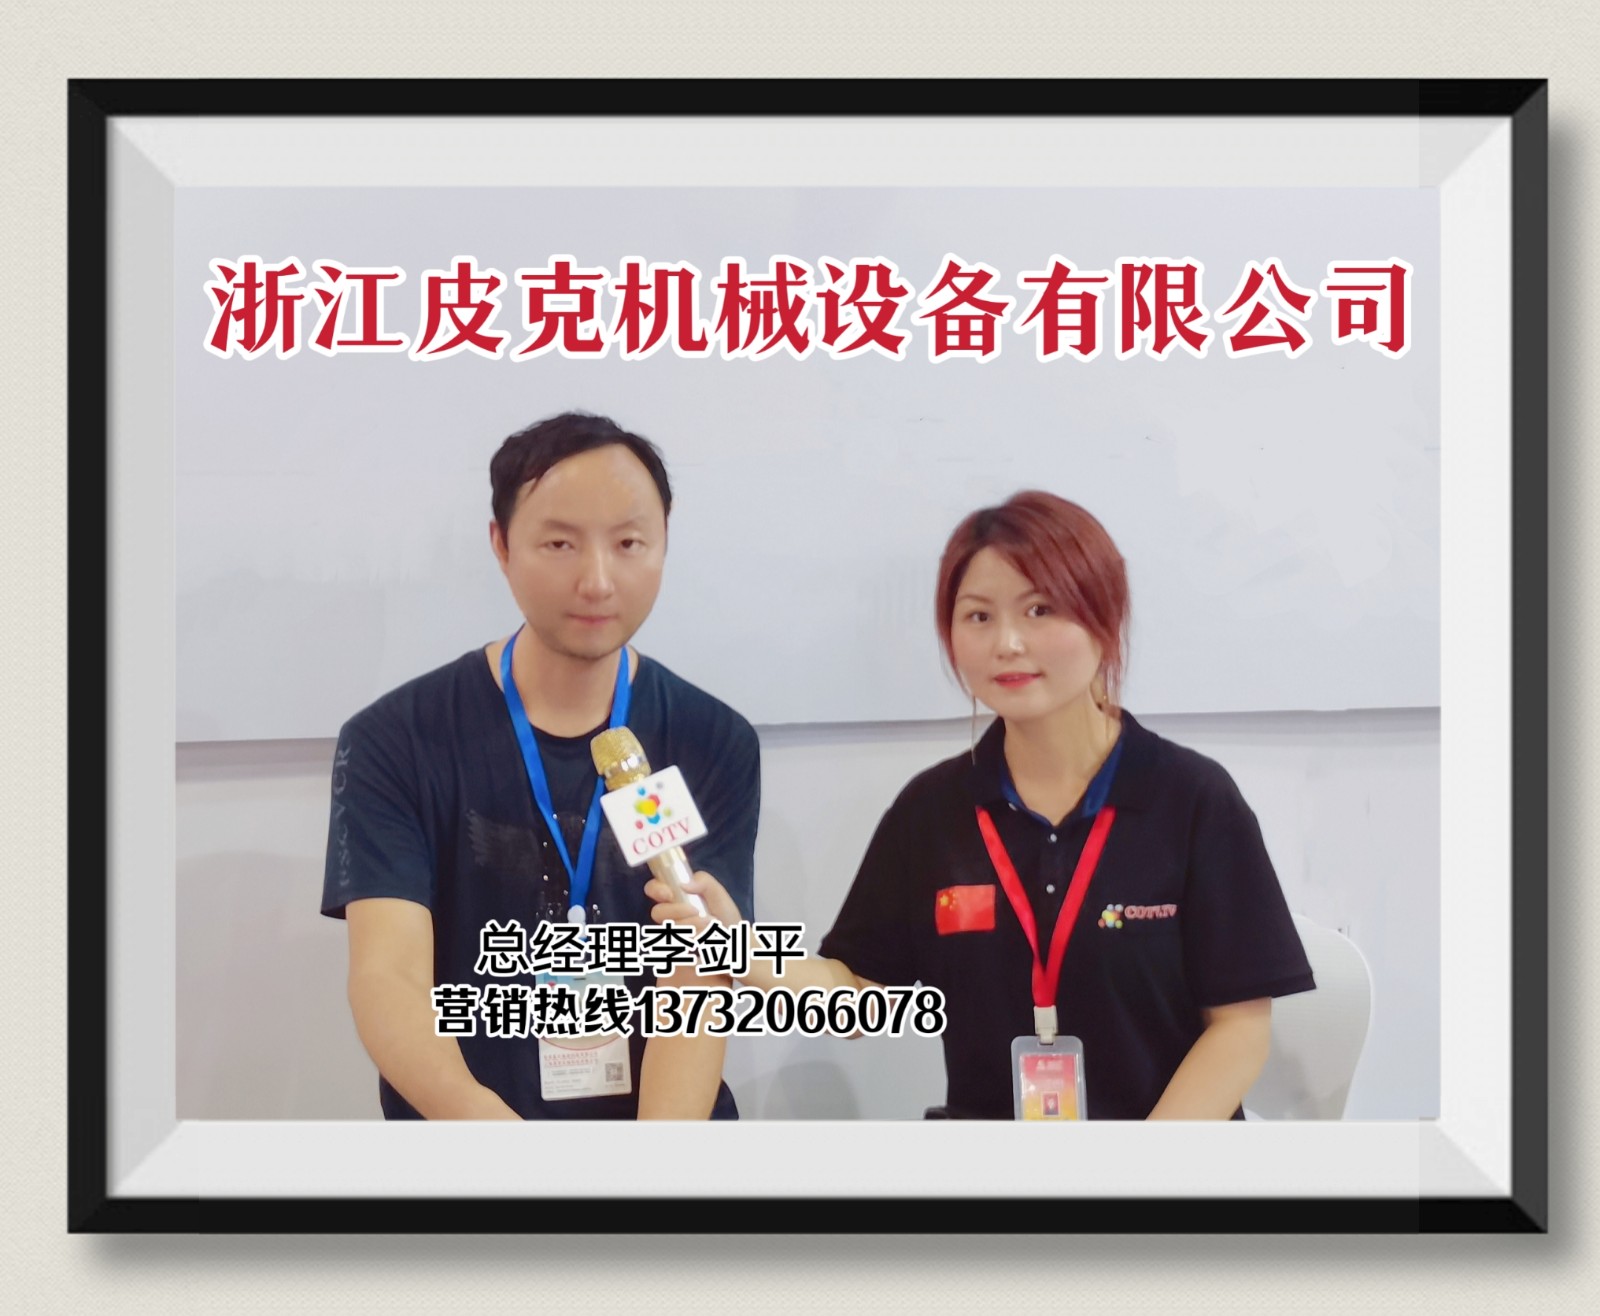 COTV直播-浙江皮克机械设备有限公司开发生产销售全自动贴标机系列设备产品